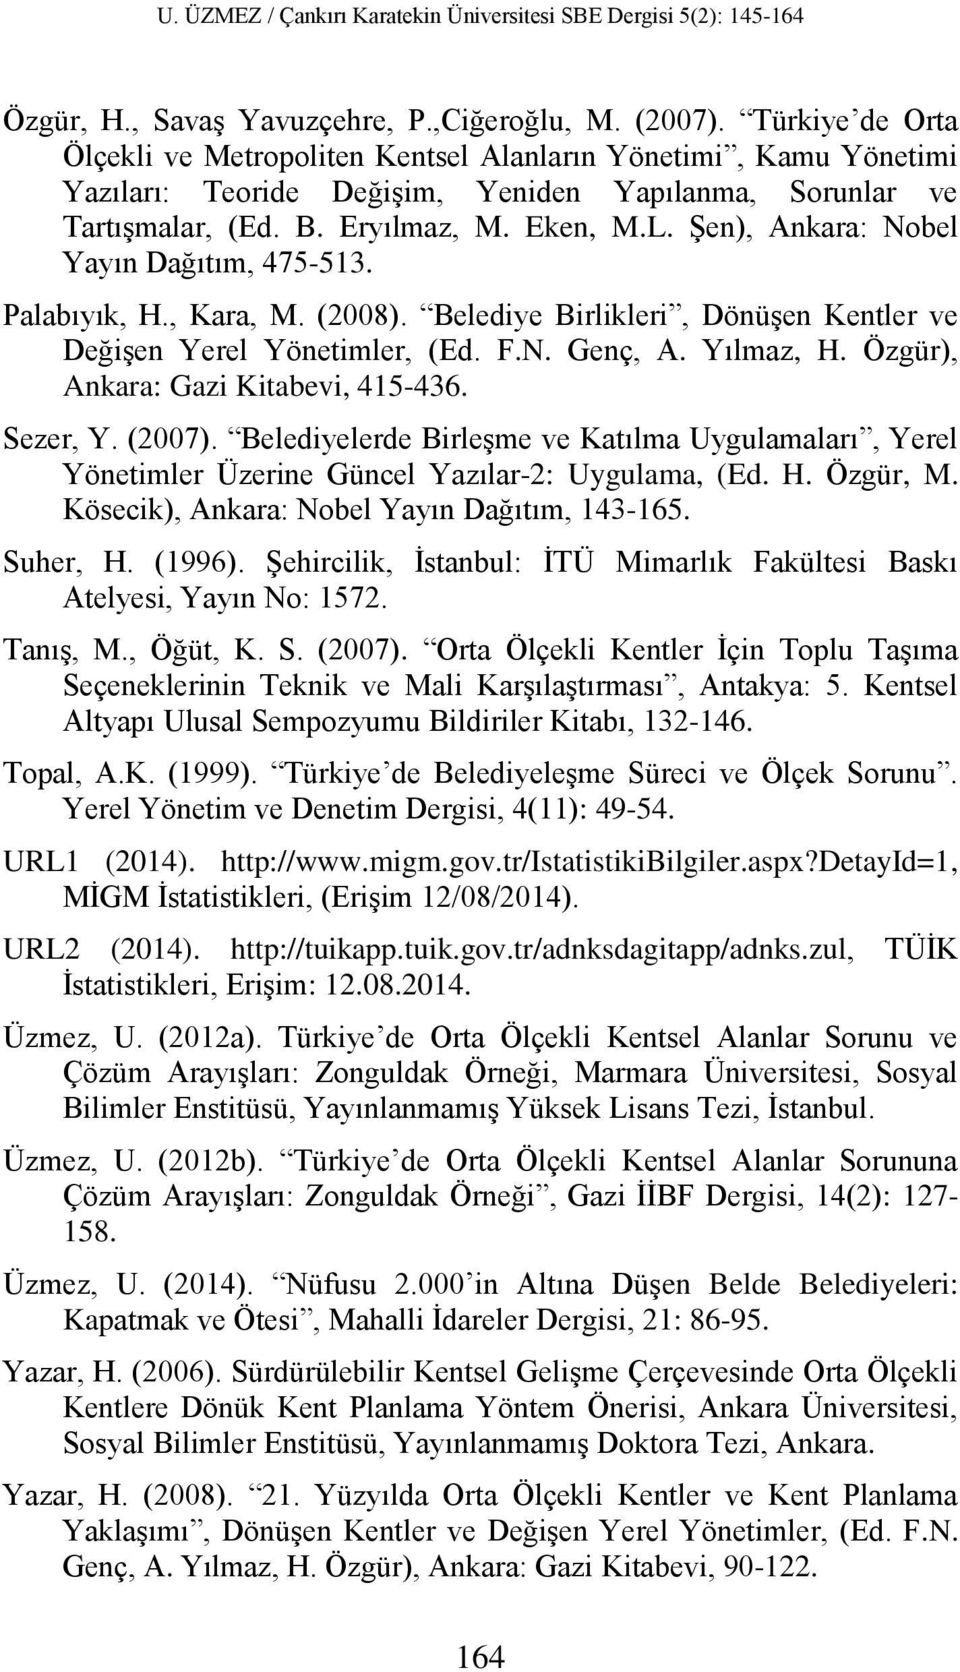 Şen), Ankara: Nobel Yayın Dağıtım, 475-513. Palabıyık, H., Kara, M. (2008). Belediye Birlikleri, Dönüşen Kentler ve Değişen Yerel Yönetimler, (Ed. F.N. Genç, A. Yılmaz, H.